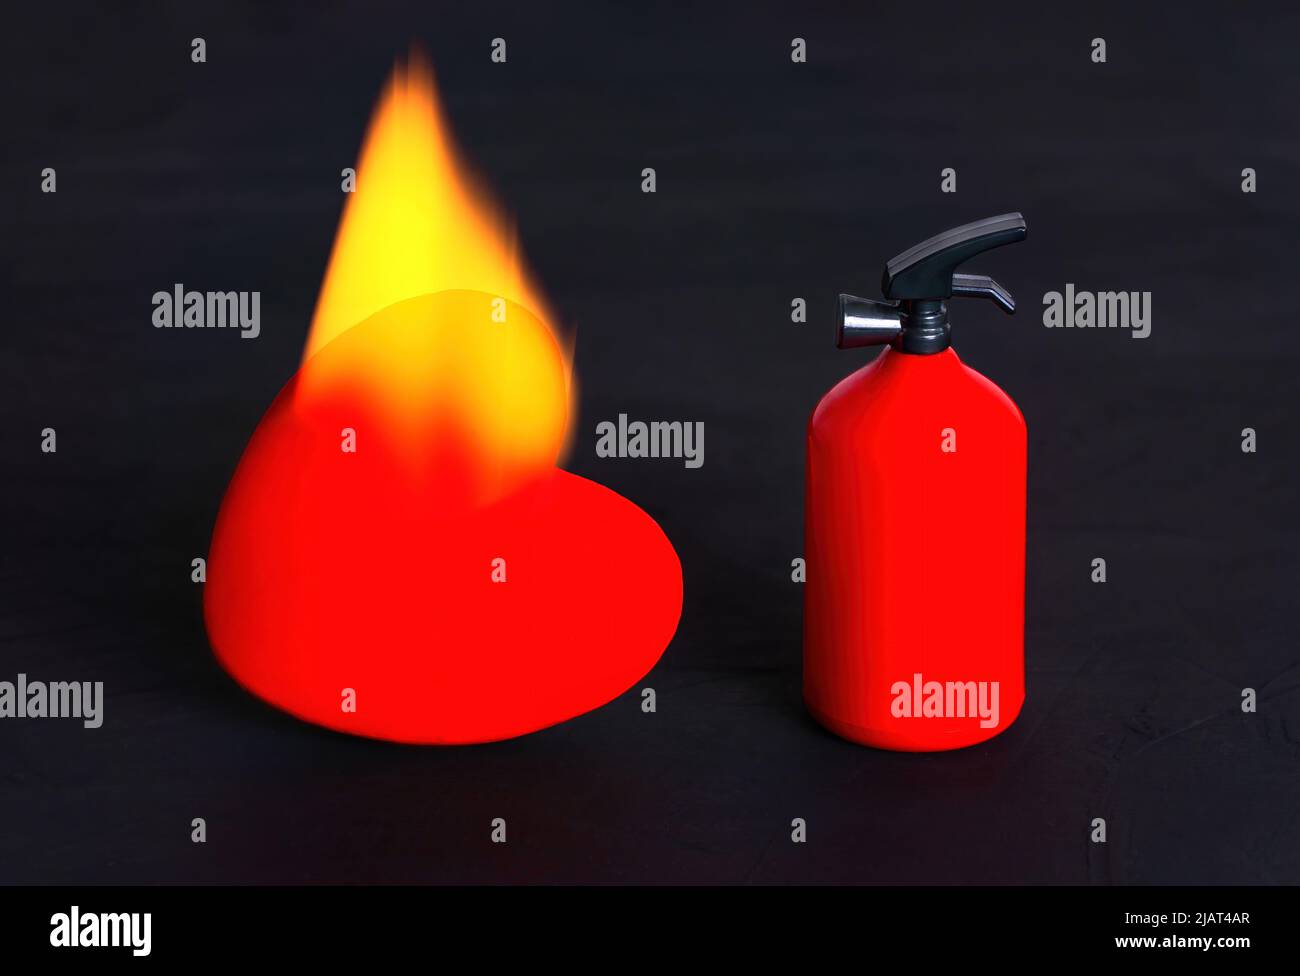 Kleiner Feuerlöscher, der durch eine brennende rote Herzform auf schwarzem Hintergrund platziert wird. Explosives und temperiertes Beziehungskonzept. Stockfoto